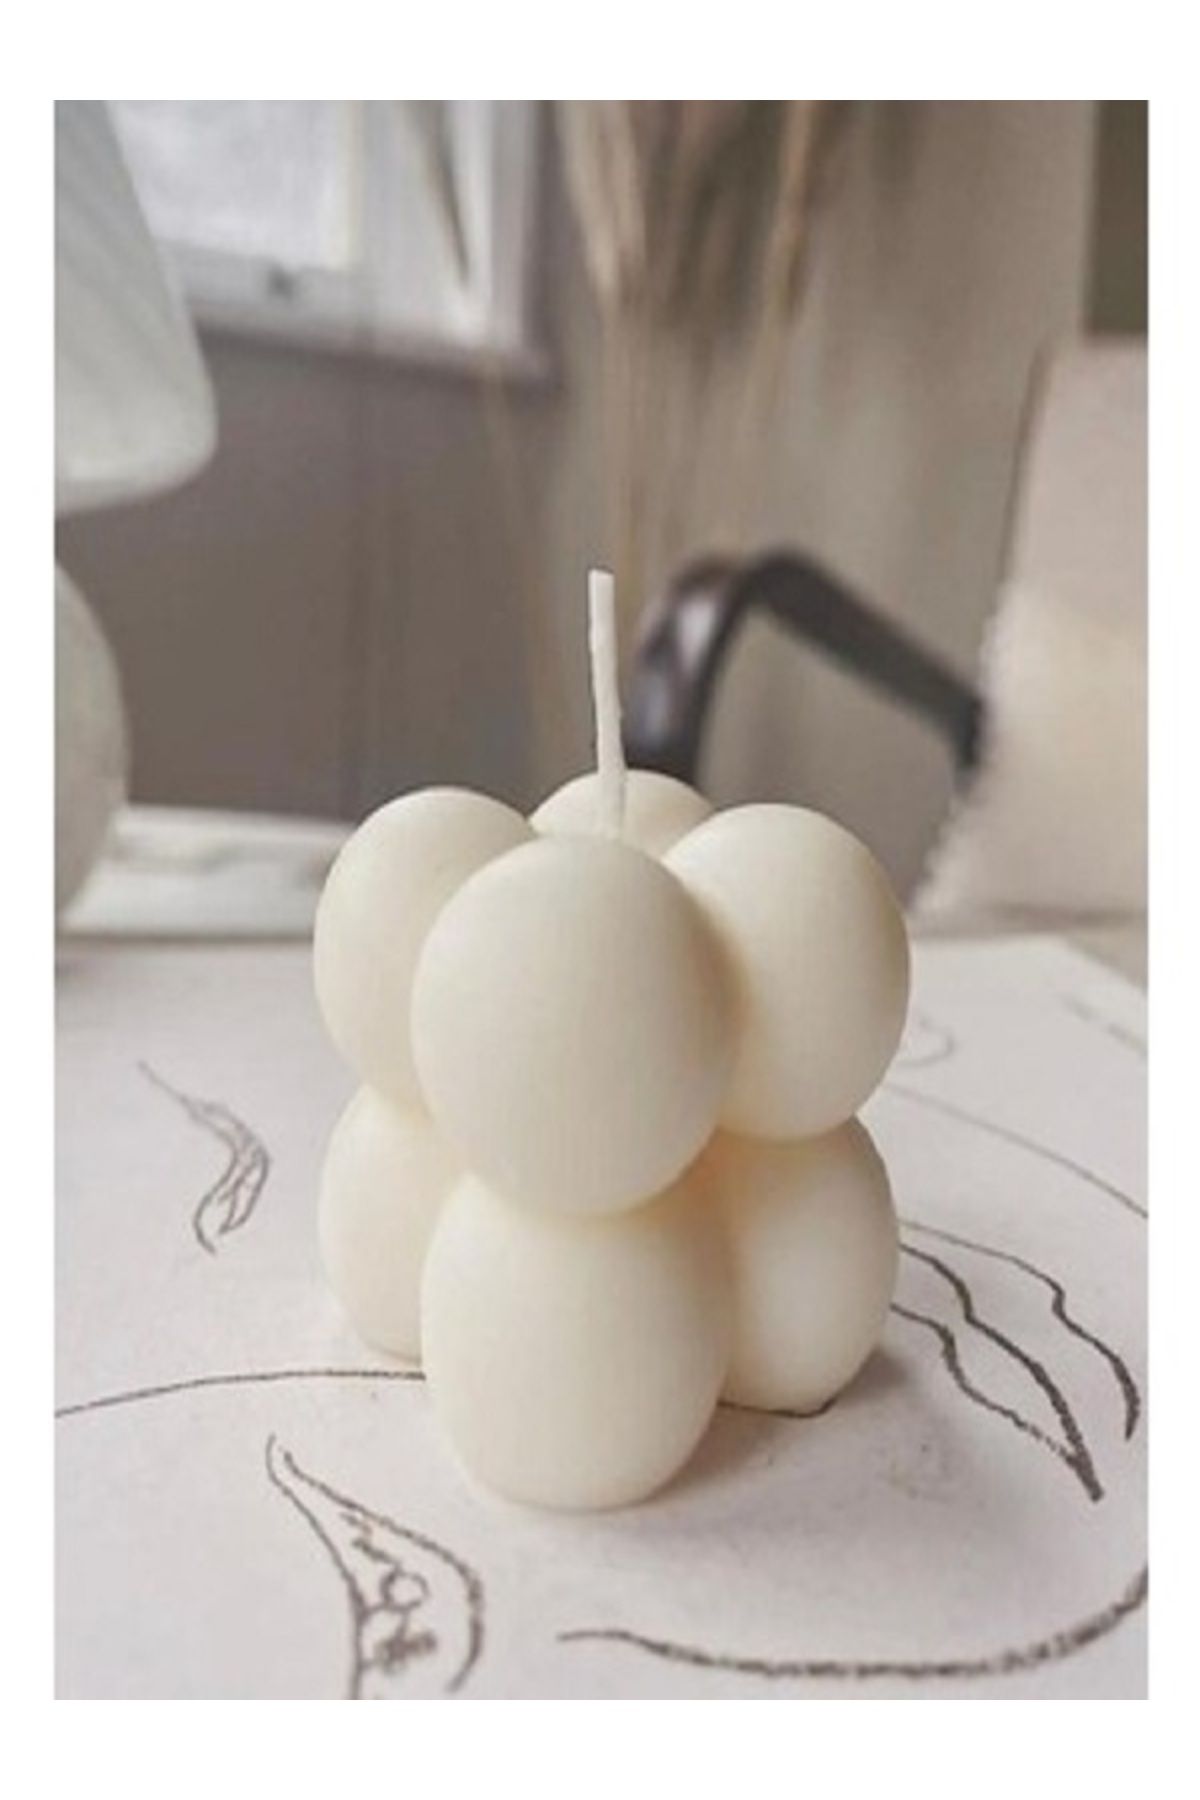 Otantik Küçük Bubble Candle Mum Kokulu Dekoratif Mum El Yapımı %100 Doğal Mumüm